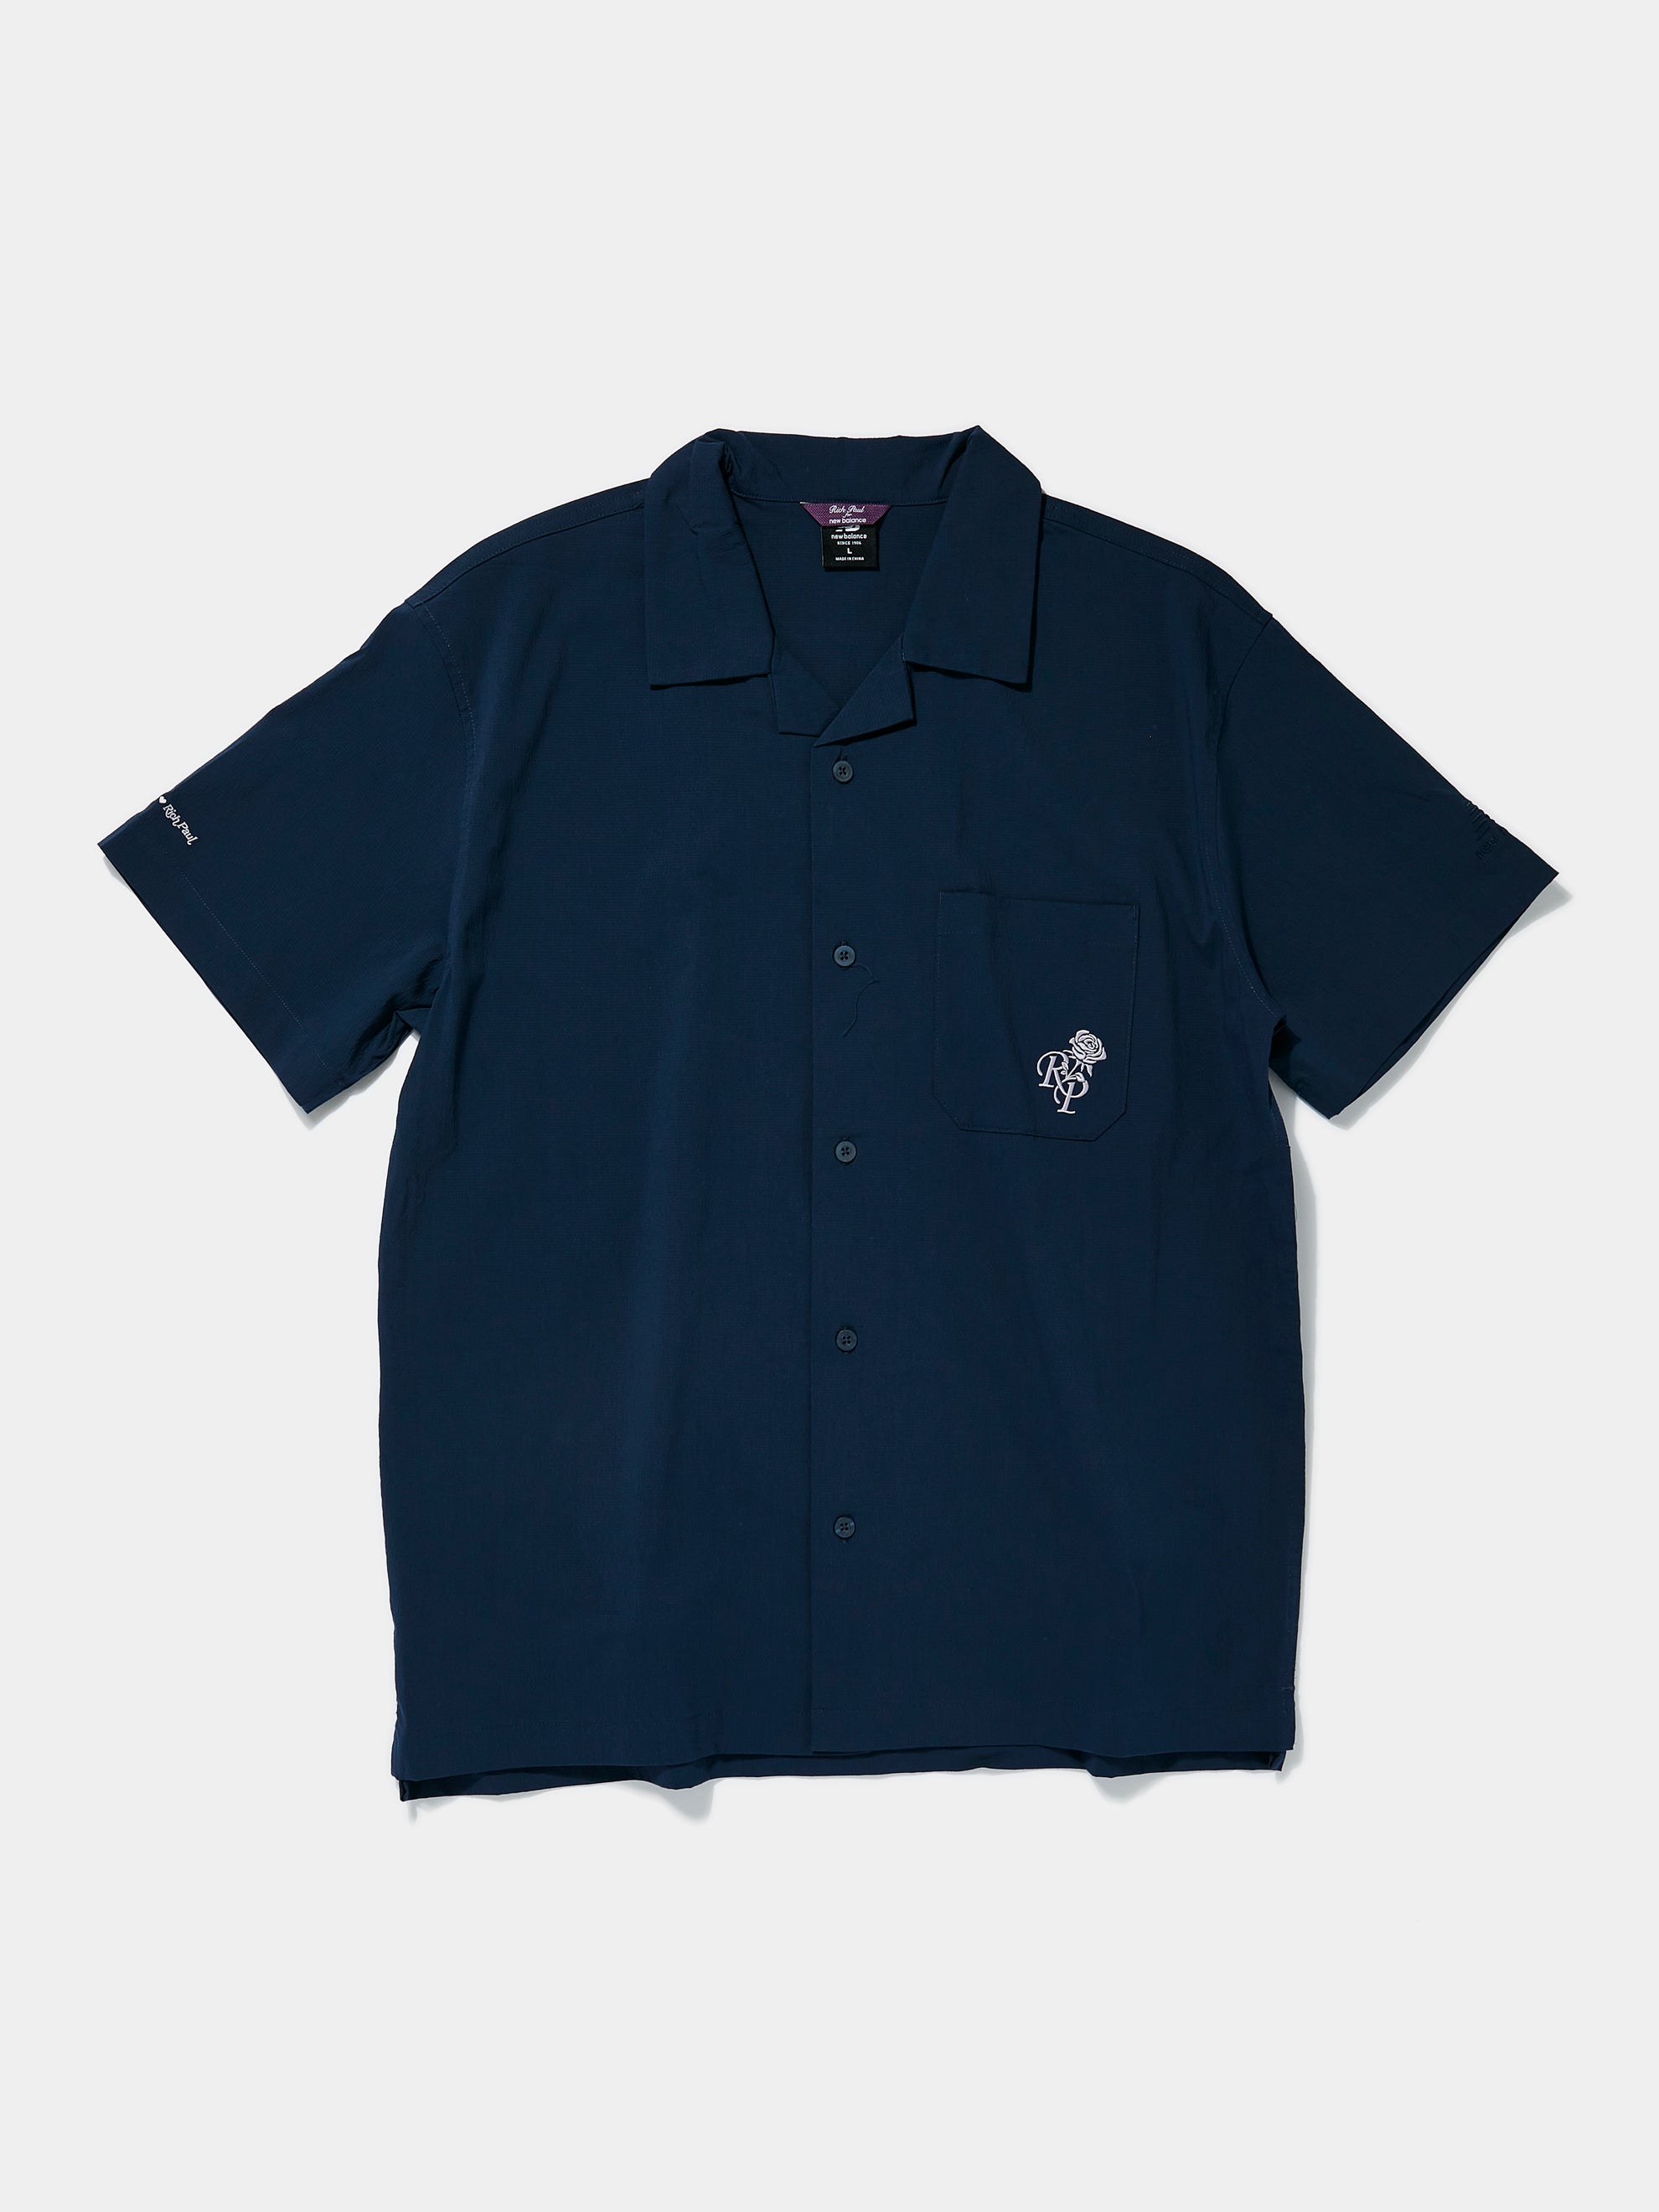 Rich Paul Camp Collar Shirt (Navy)